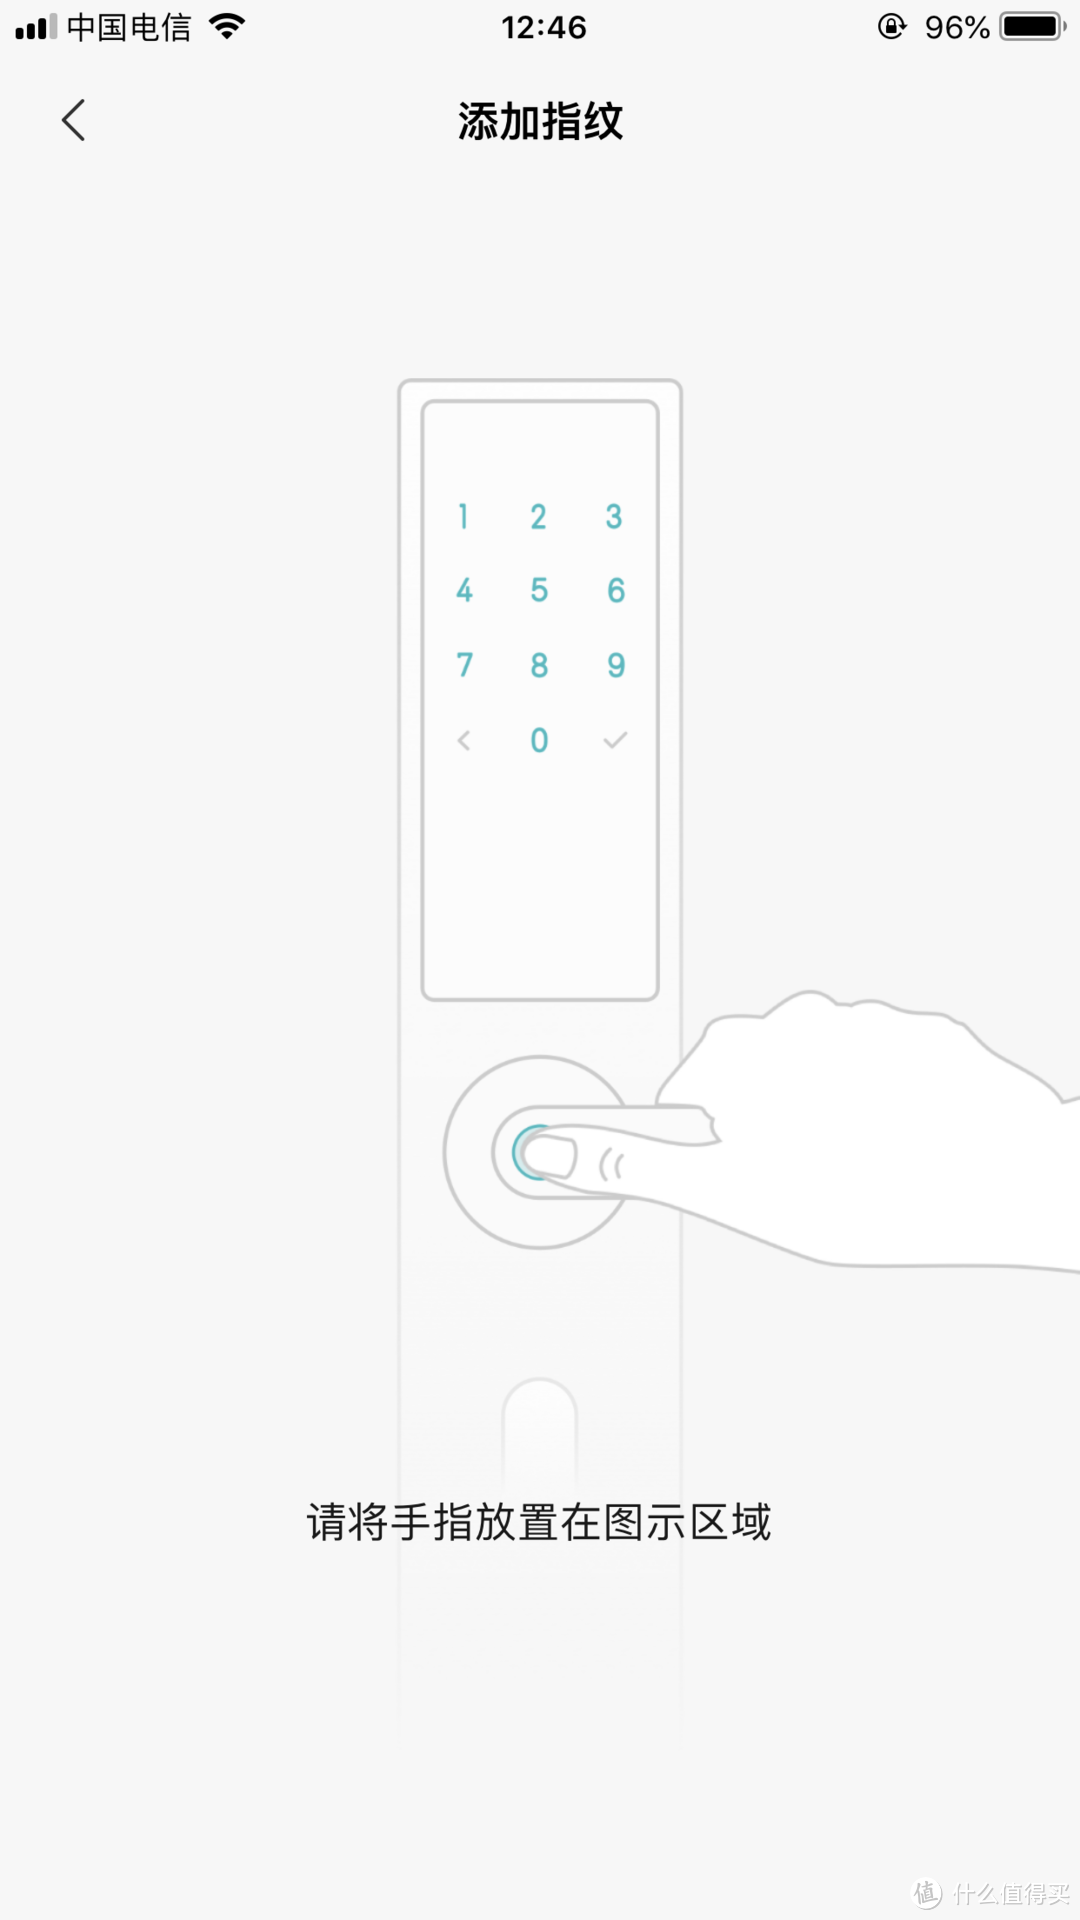 按门锁的指纹感应区域，根据提示可以添加指纹